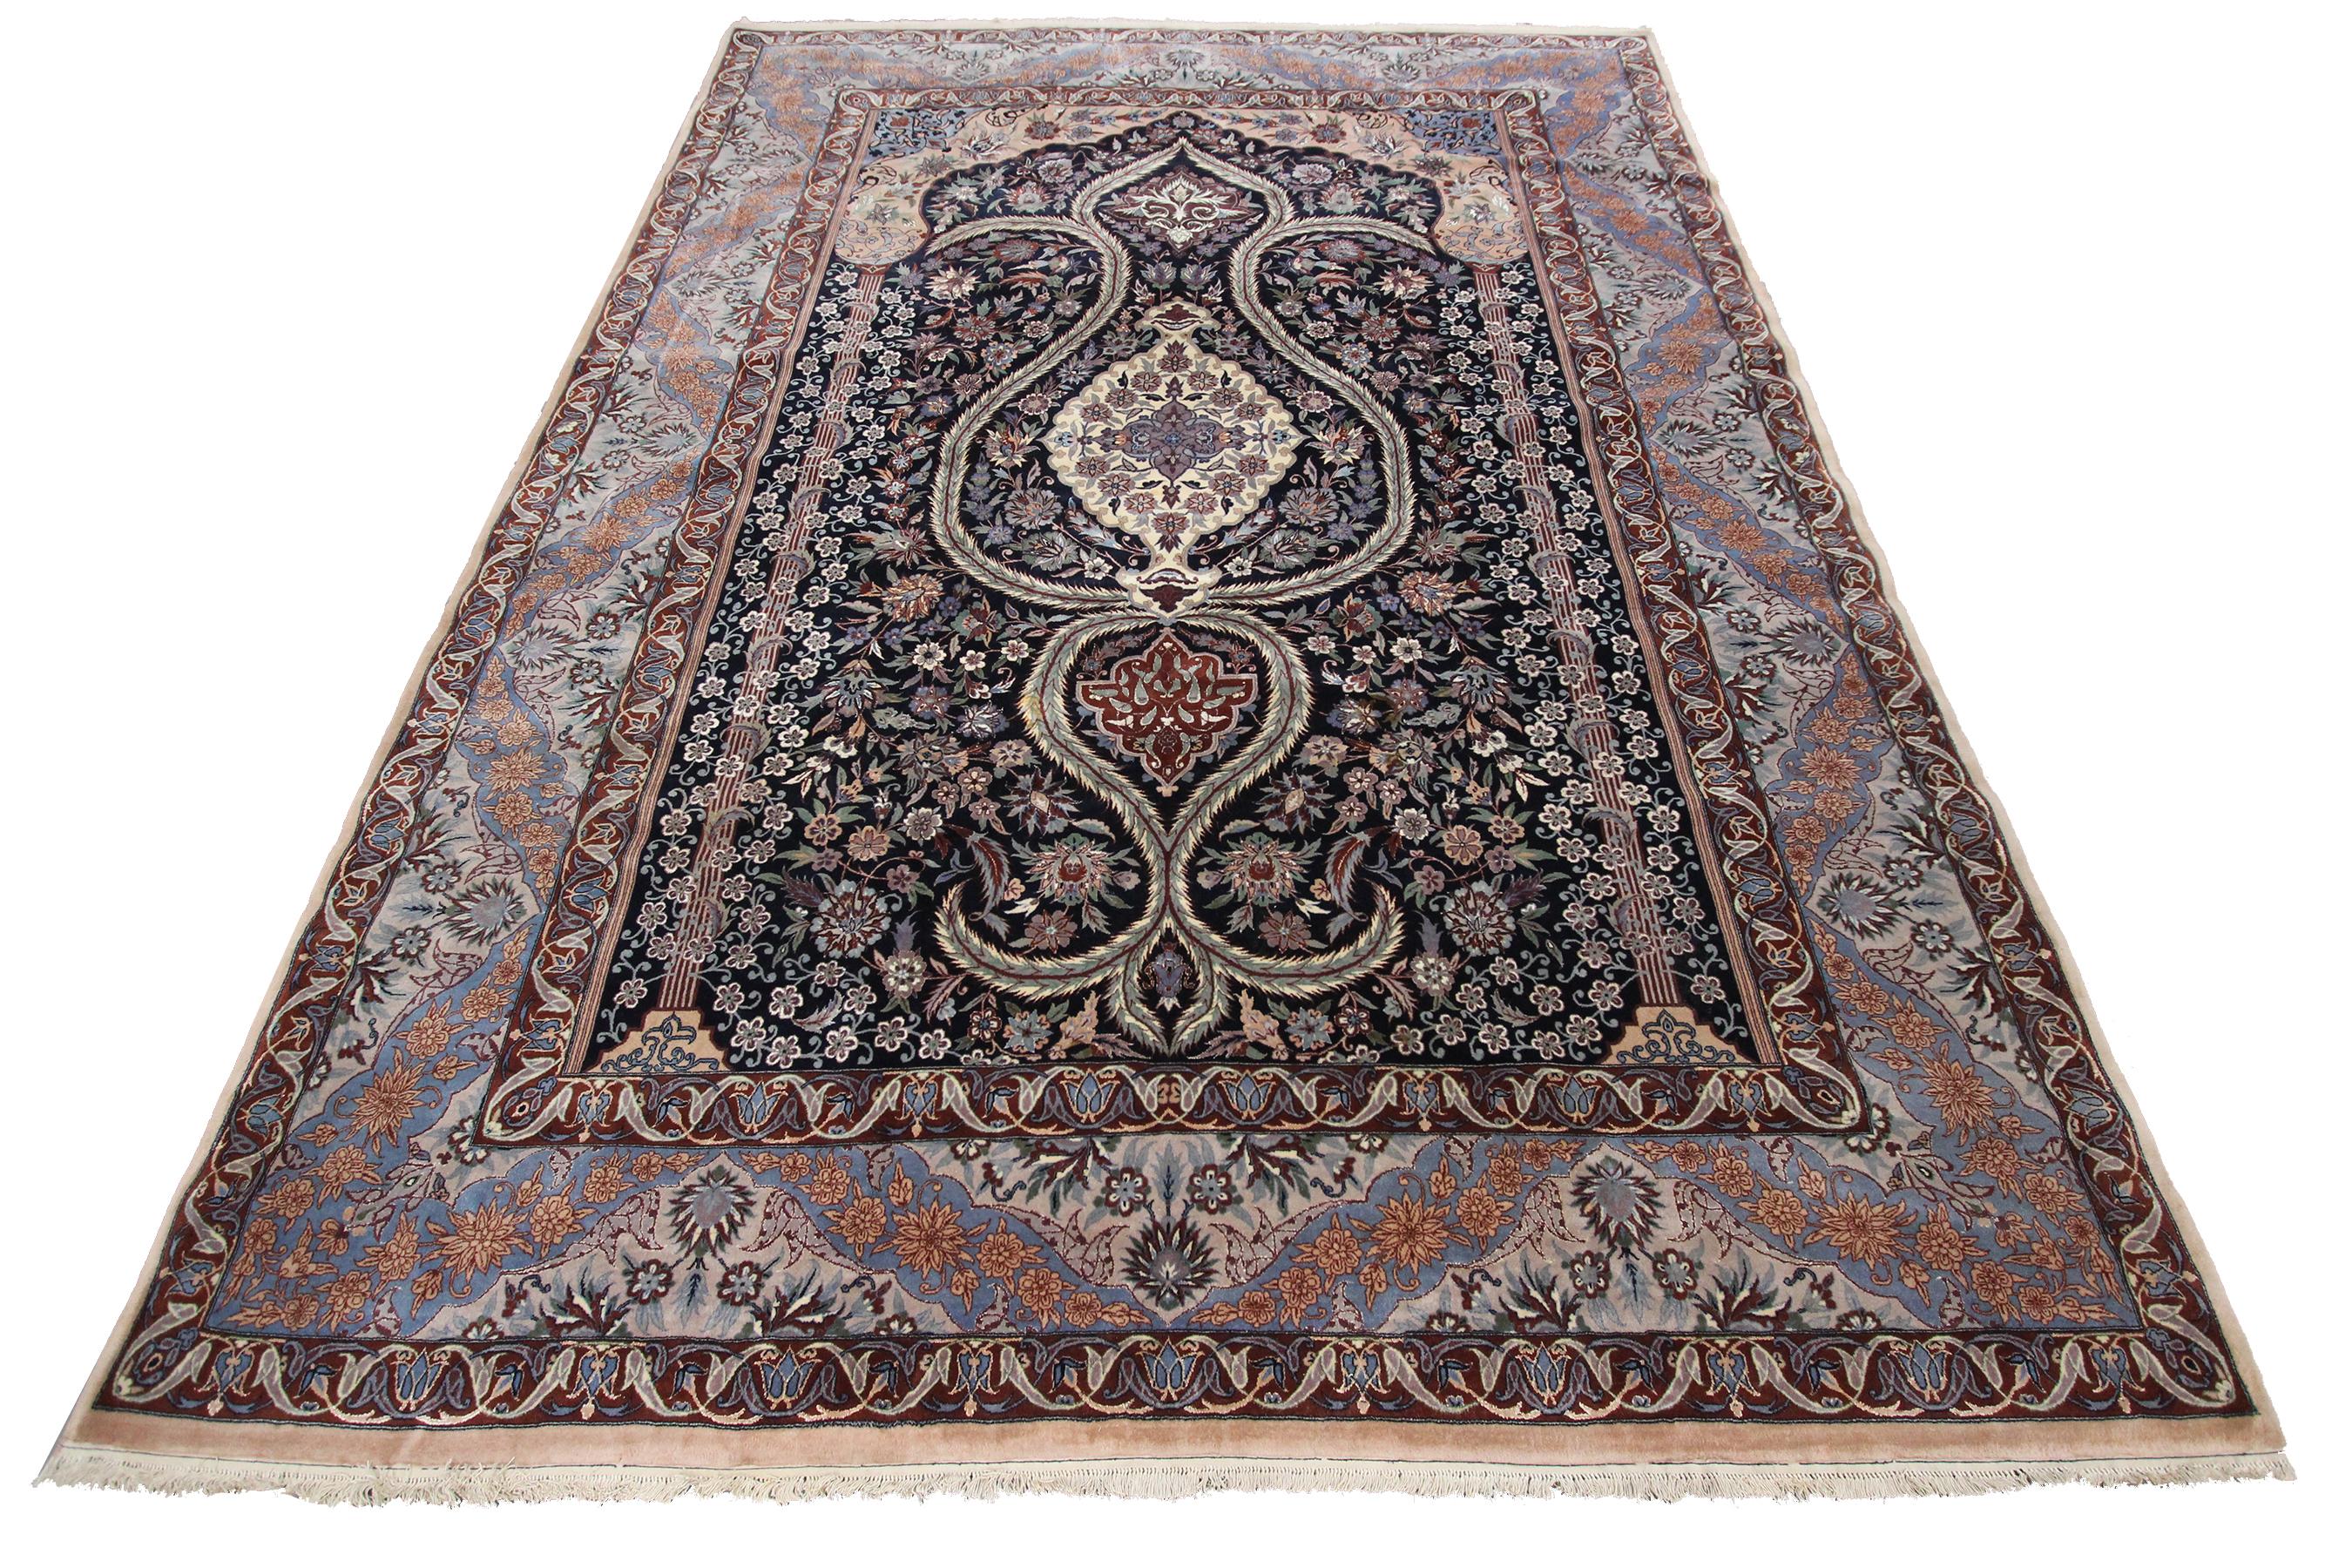 Außergewöhnlich feiner Esfahan Teppich aus Wolle und Seide Isfahan Silk Foundation Rug
8x11 244cm x 335

